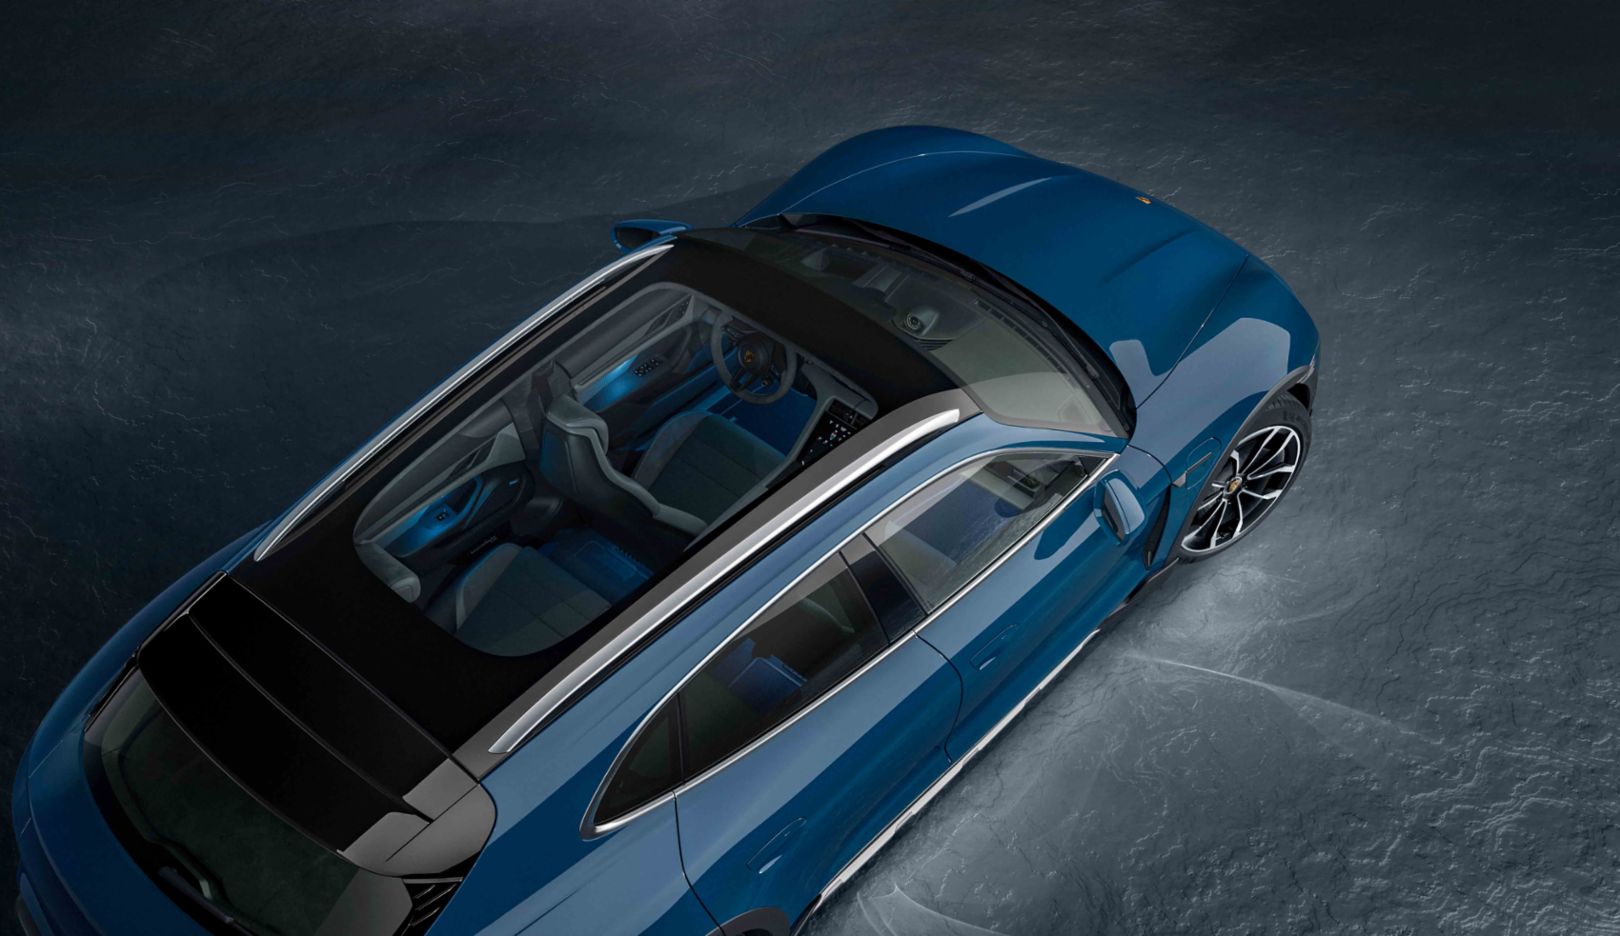 Neue Karosserieform: Das Panoramadach lässt viel Licht in den Innenraum und verstärkt das großzügige Raumgefühl. Hier im Bild bei einem Modell in der Farbe Neptunblau.